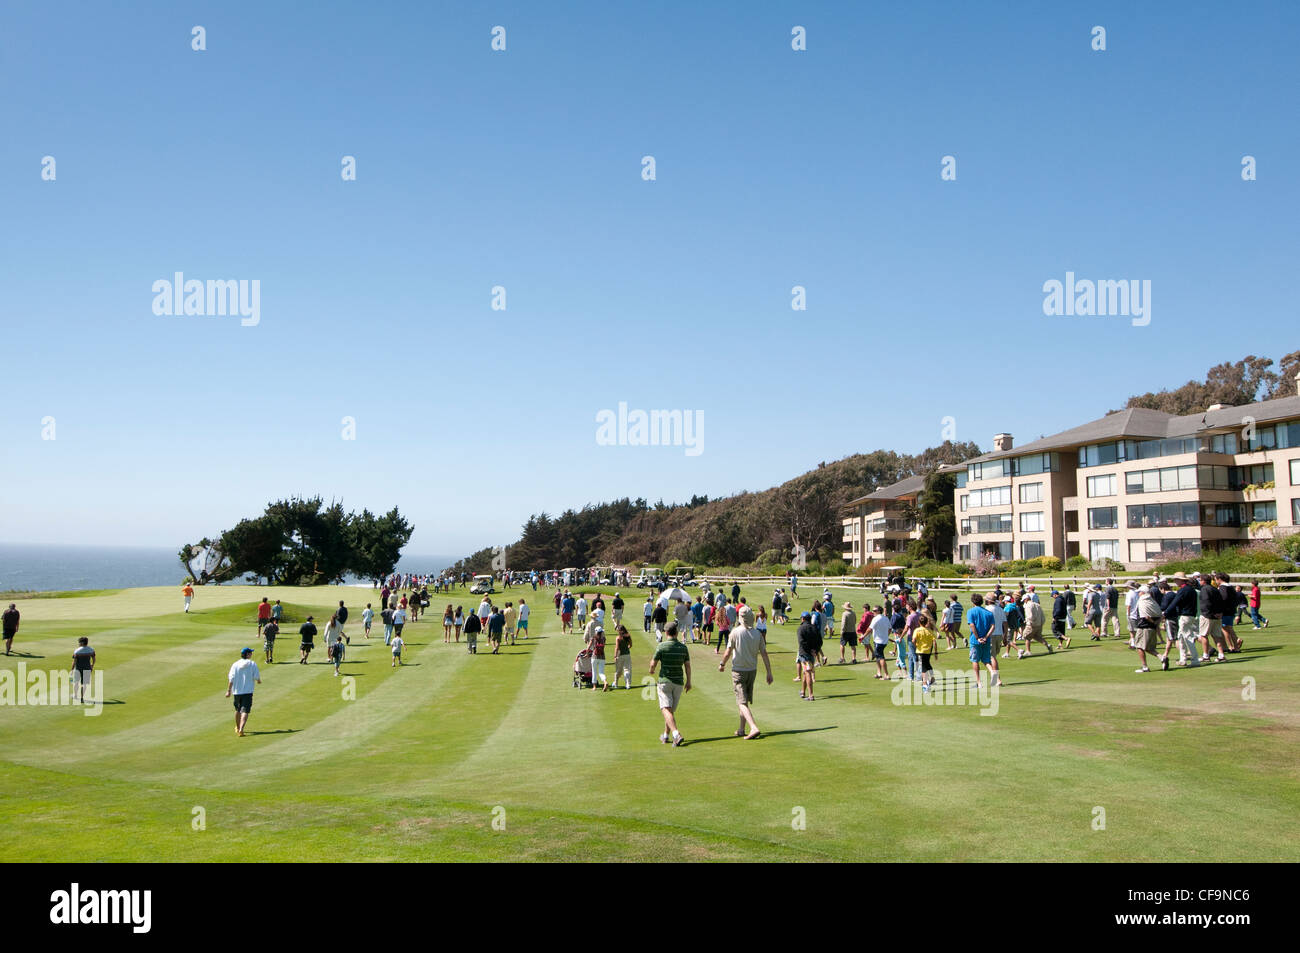 Los espectadores y los golfistas desconocido. Los campos de golf de campeonato. Foto de stock